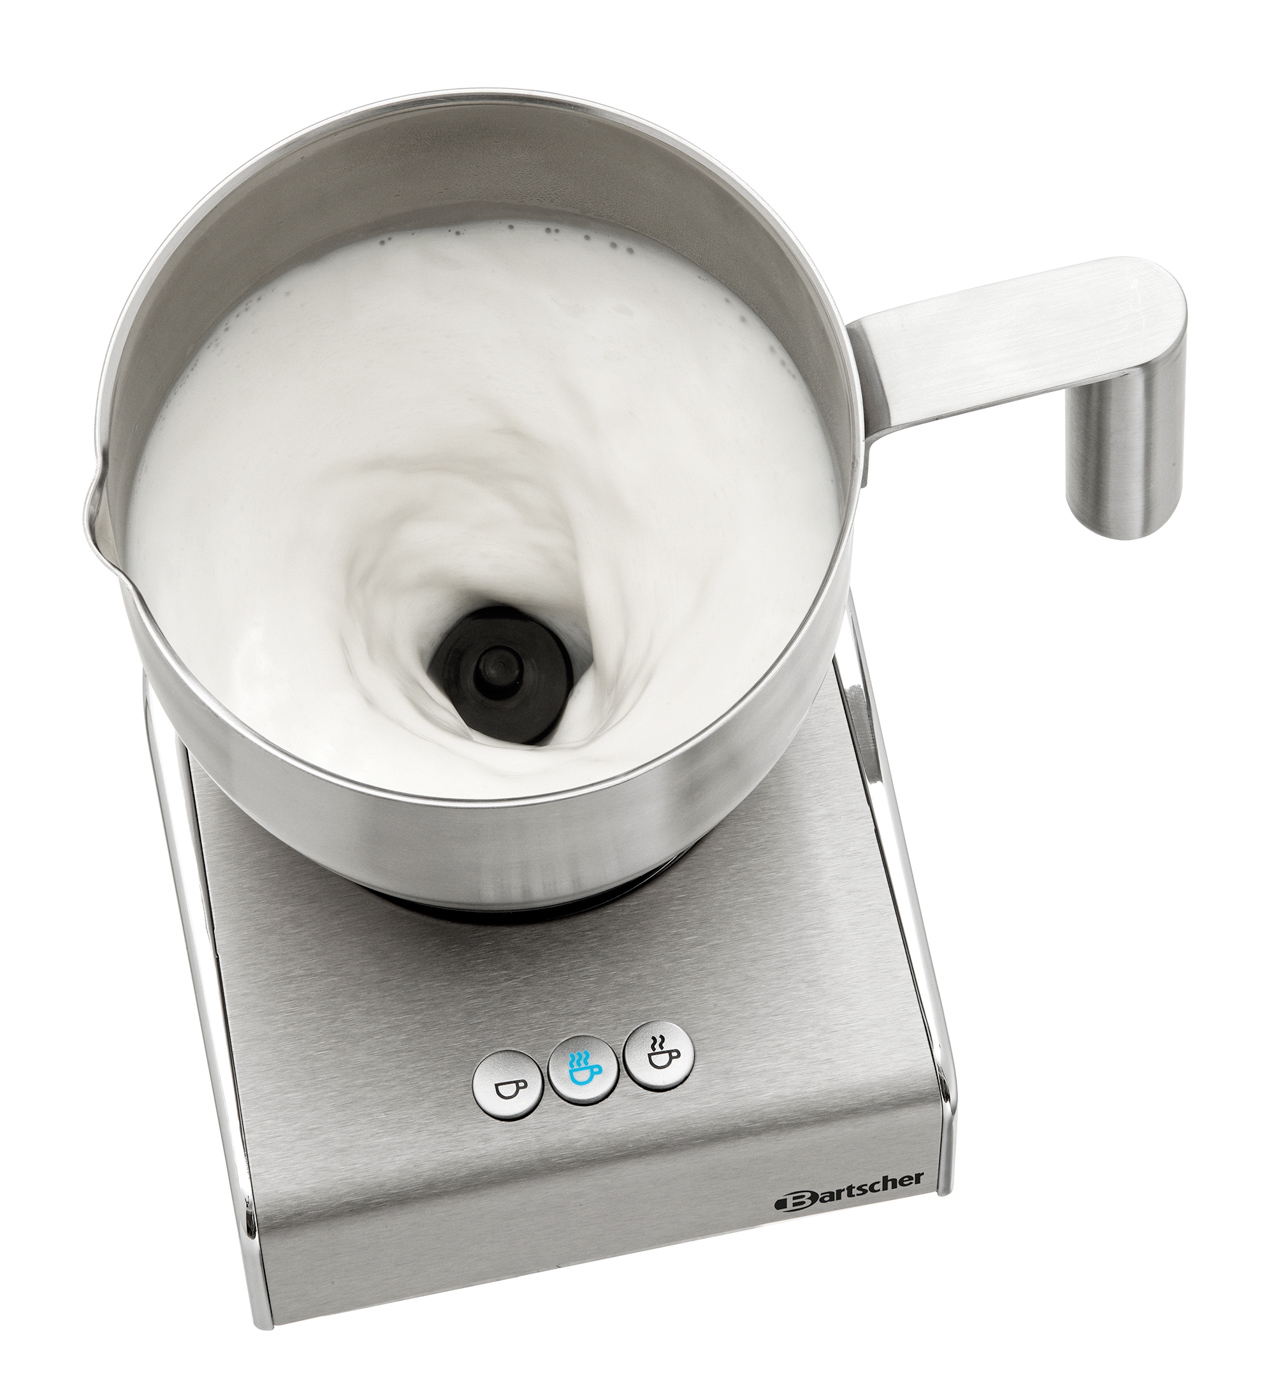 Bartscher Milchaufschäumer Induktion MSI400 | Funktionen: Aufschäumen/Erhitzen bei 65 °C | Maße: 12,5 x 15 x 180 cm. Gewicht: 1,1 kg